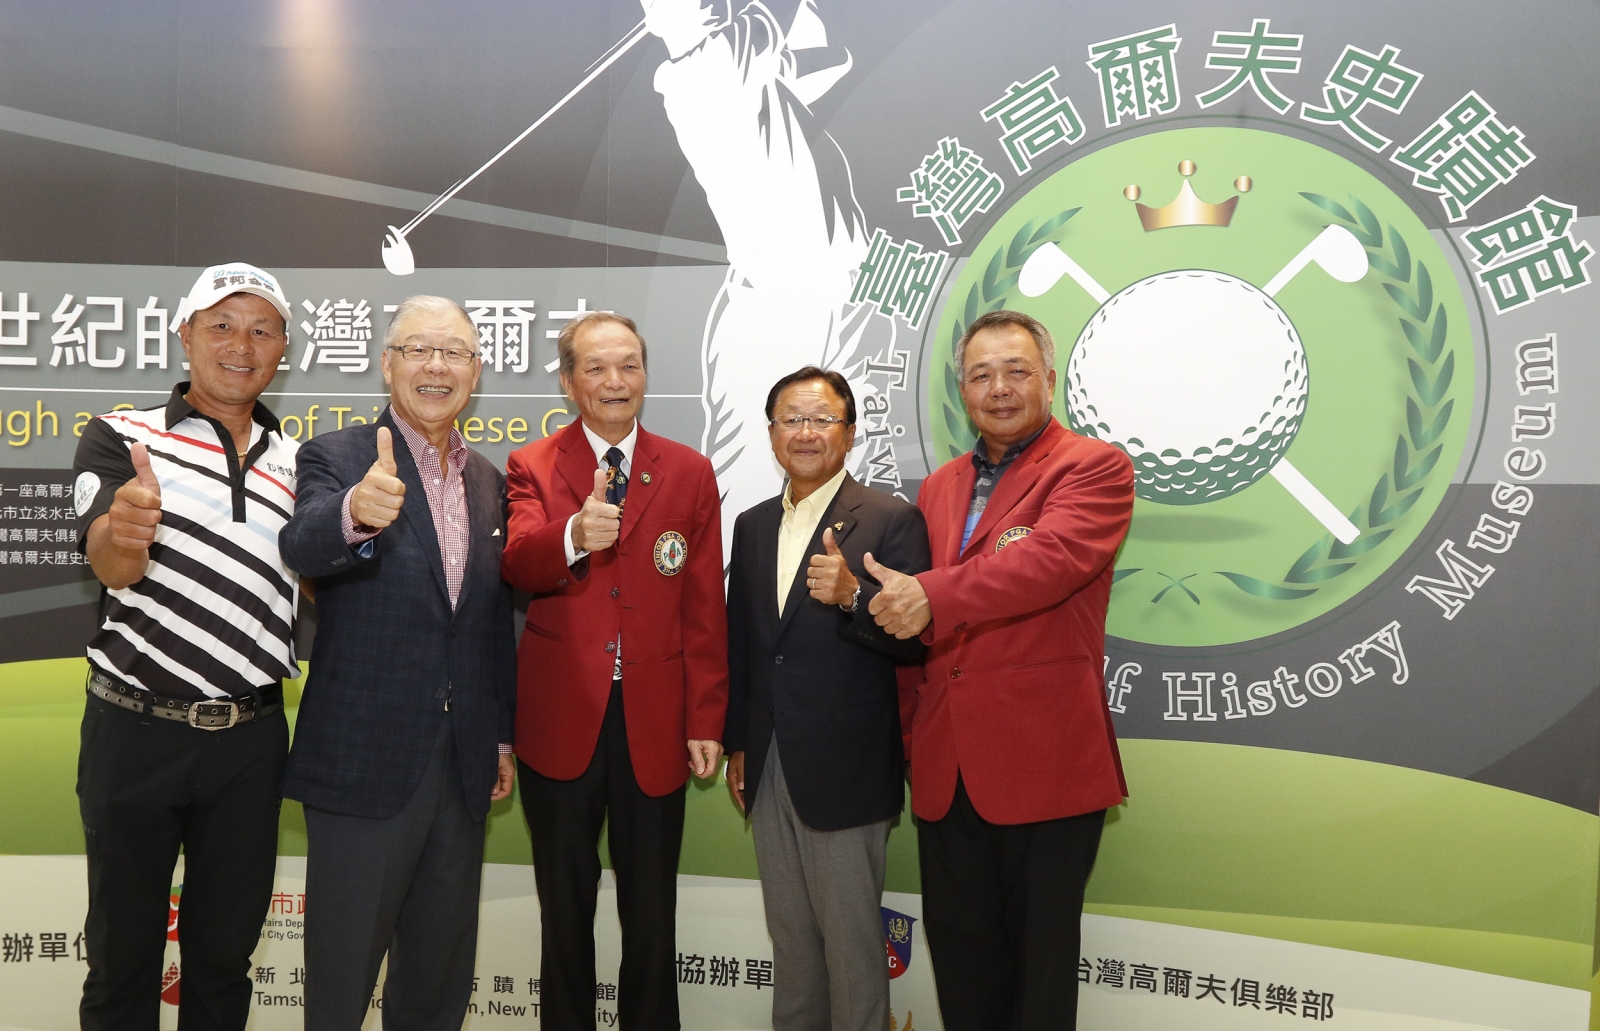 謝敏男(左)與富邦集團董事長蔡明忠在15年前共同創辦這項賽事。77歲的謝敏男今天再一次擊出低於自己年齡的72桿成績。